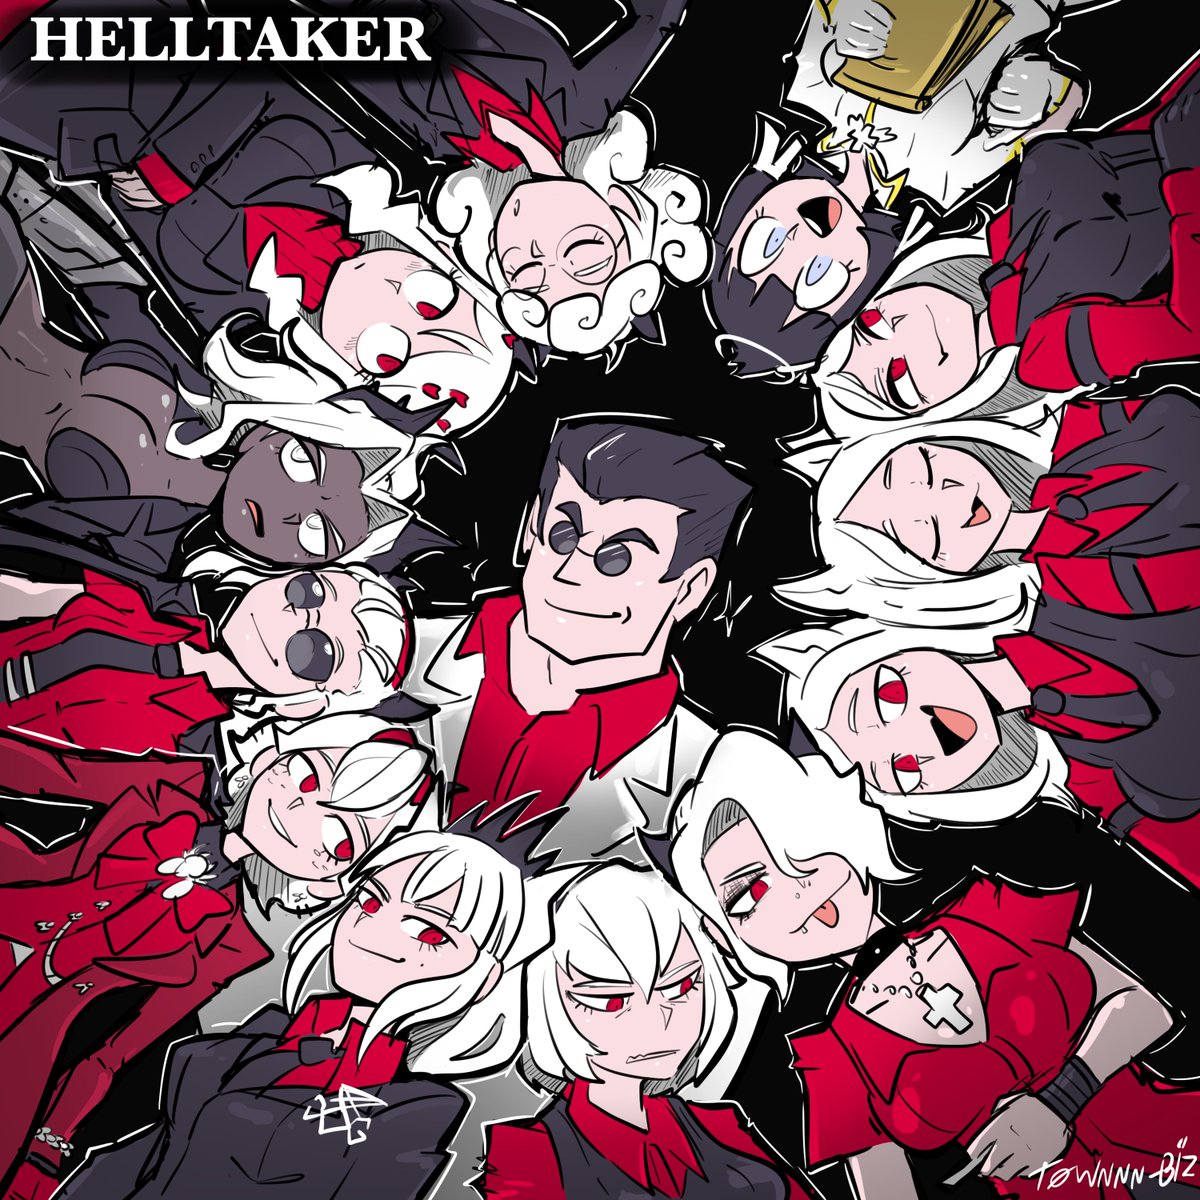 Happy 4th anniversary helltaker 👏

#Helltaker #artwork #digitalartwork